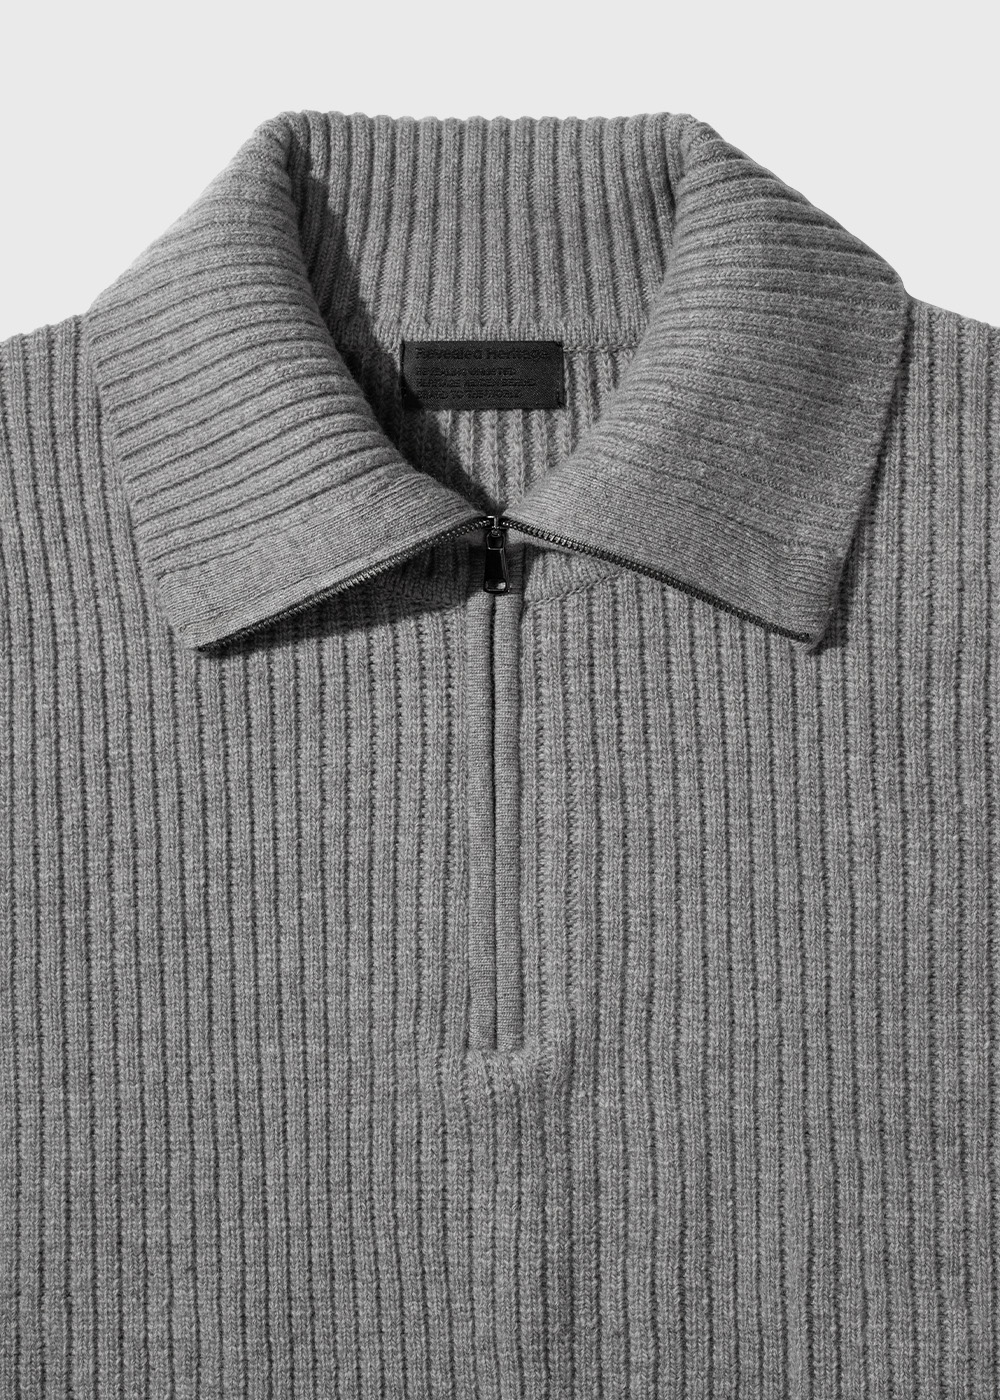 Half Zip Pullover Cardigan Knit _ gray